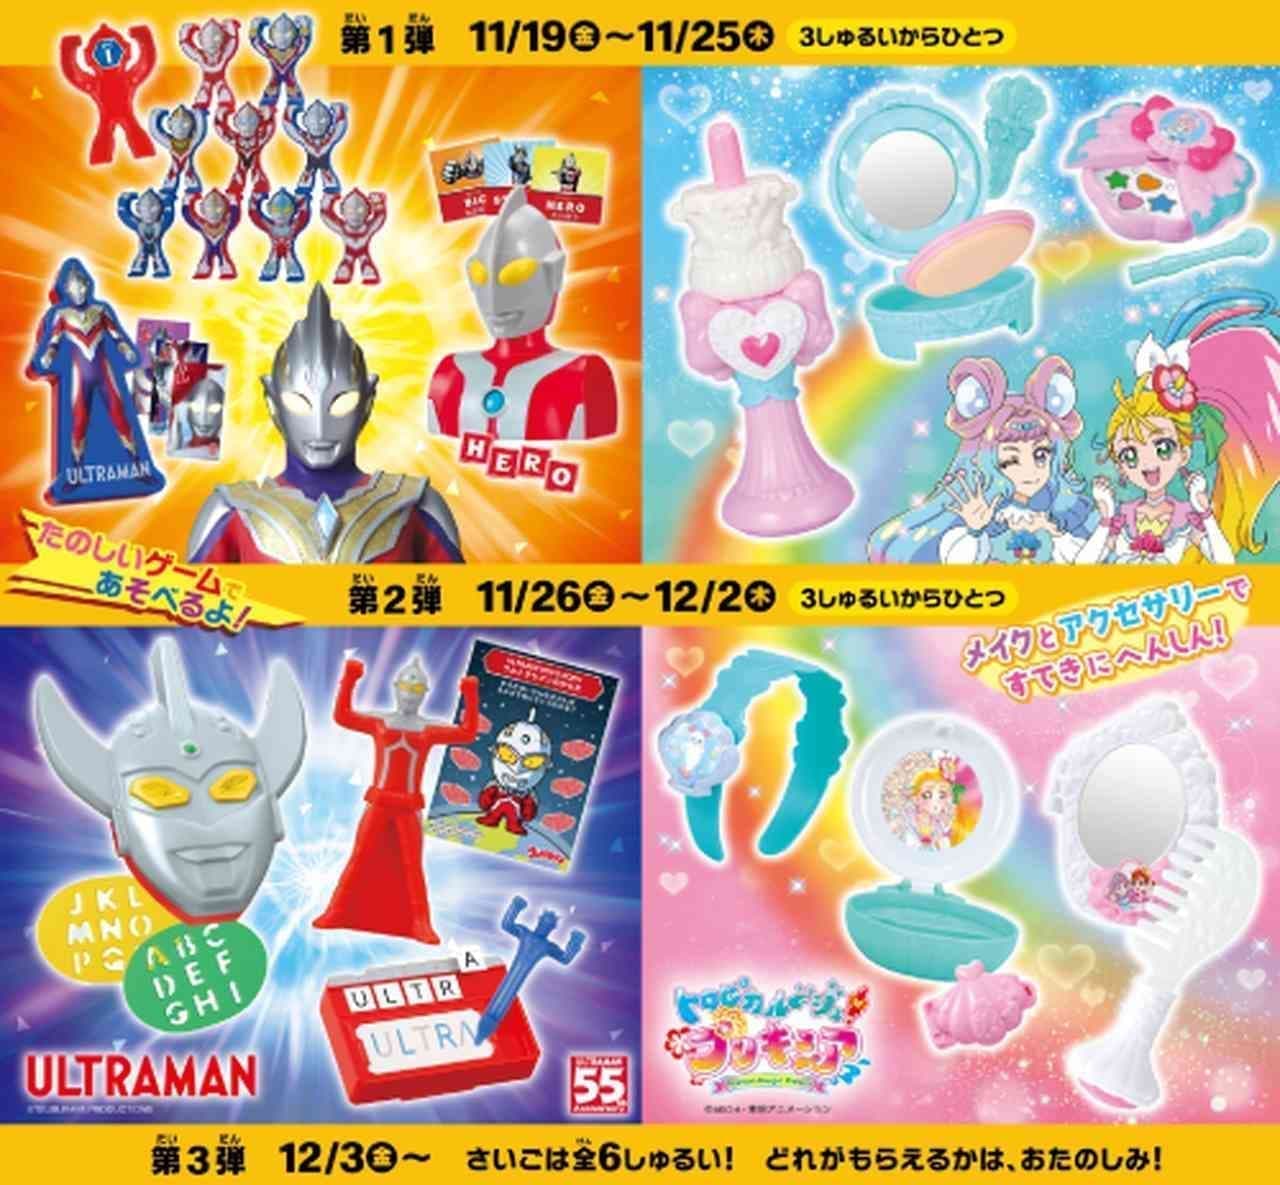 McDonald's Happy Set "Ultraman" and Happy Set "Tropical-Ju! Precure"